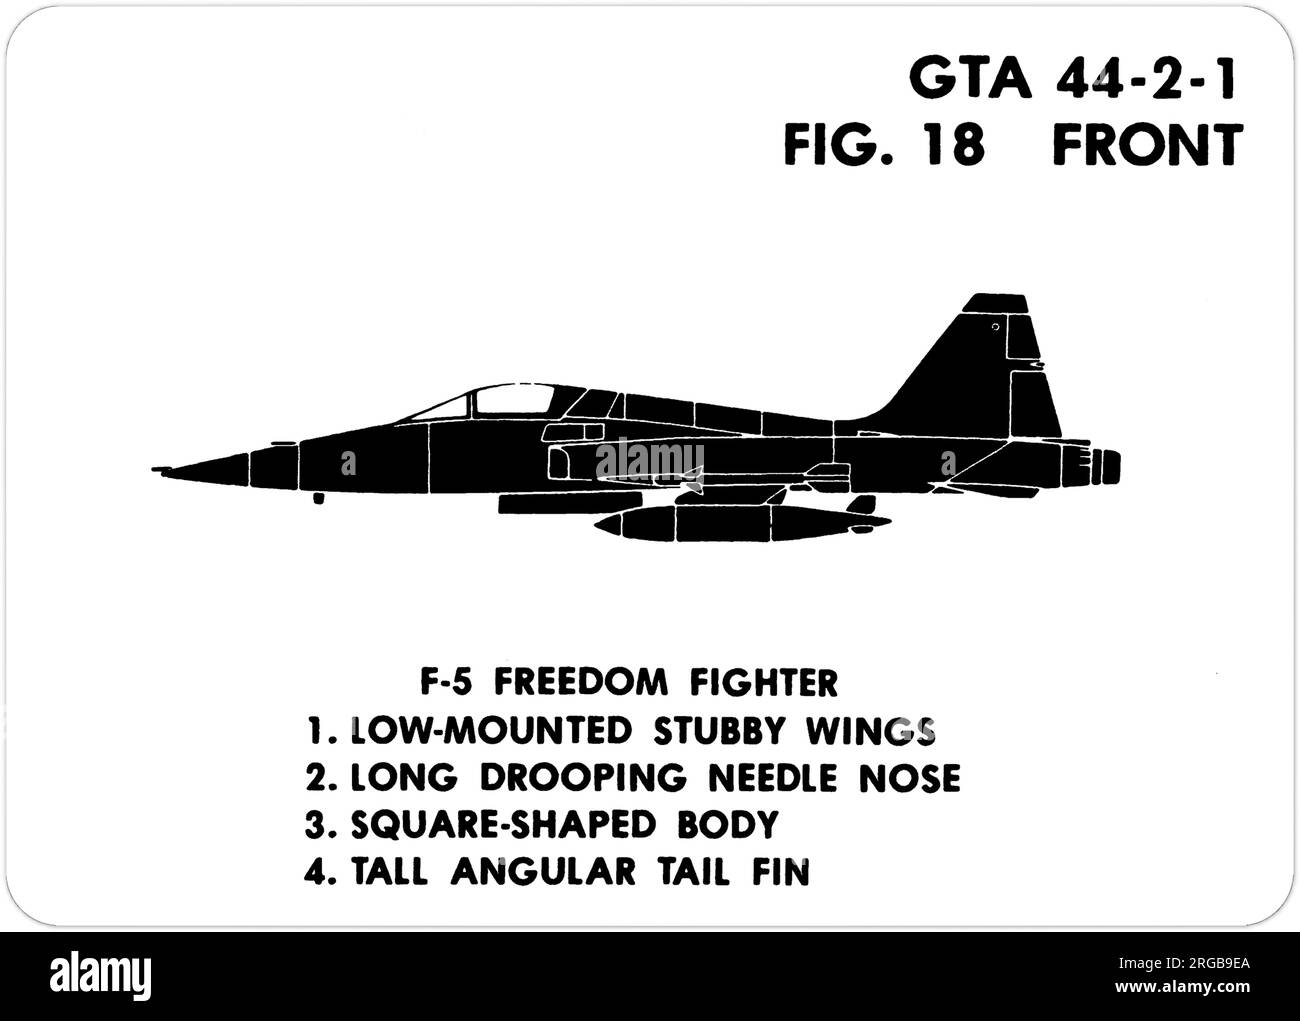 Northrop F-5A. Il s'agit de l'une des séries de Graphics Training AIDS (GTA) utilisées par l'armée des États-Unis pour former leur personnel à reconnaître les avions amicaux et hostiles. Cet ensemble, GTA 44-2-1, a été publié en July1977. L'appareil est équipé d'appareils provenant du Canada, de l'Italie, du Royaume-Uni, des États-Unis et de l'URSS. Banque D'Images